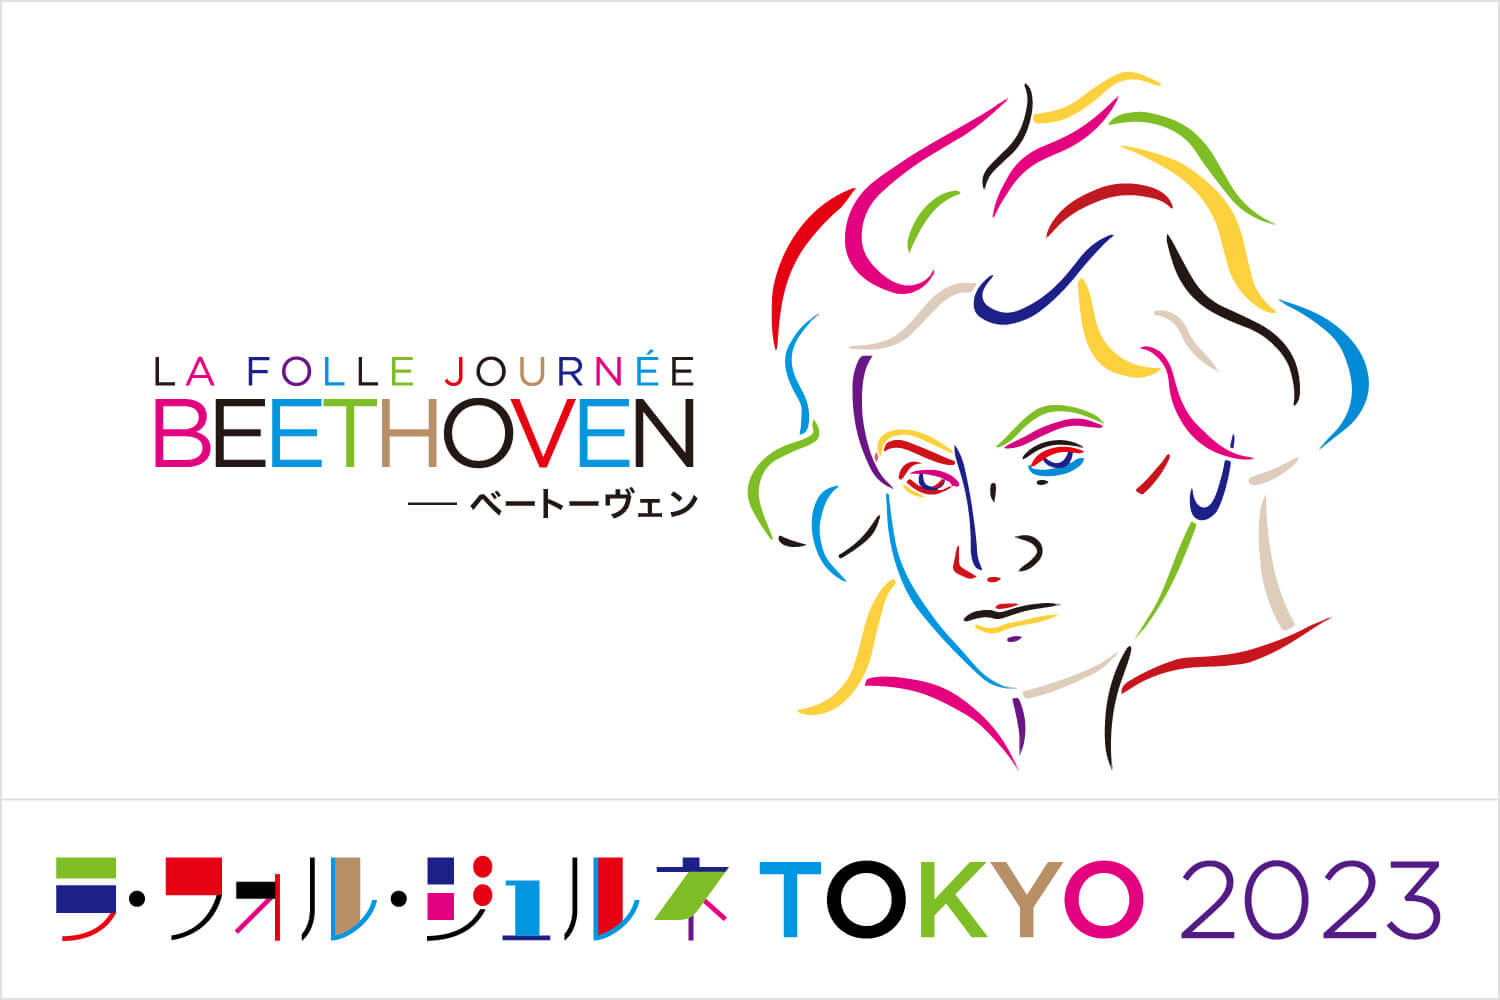 ラ・フォル・ジュルネTOKYO2023 「Beethoven ― ベートーヴェン」